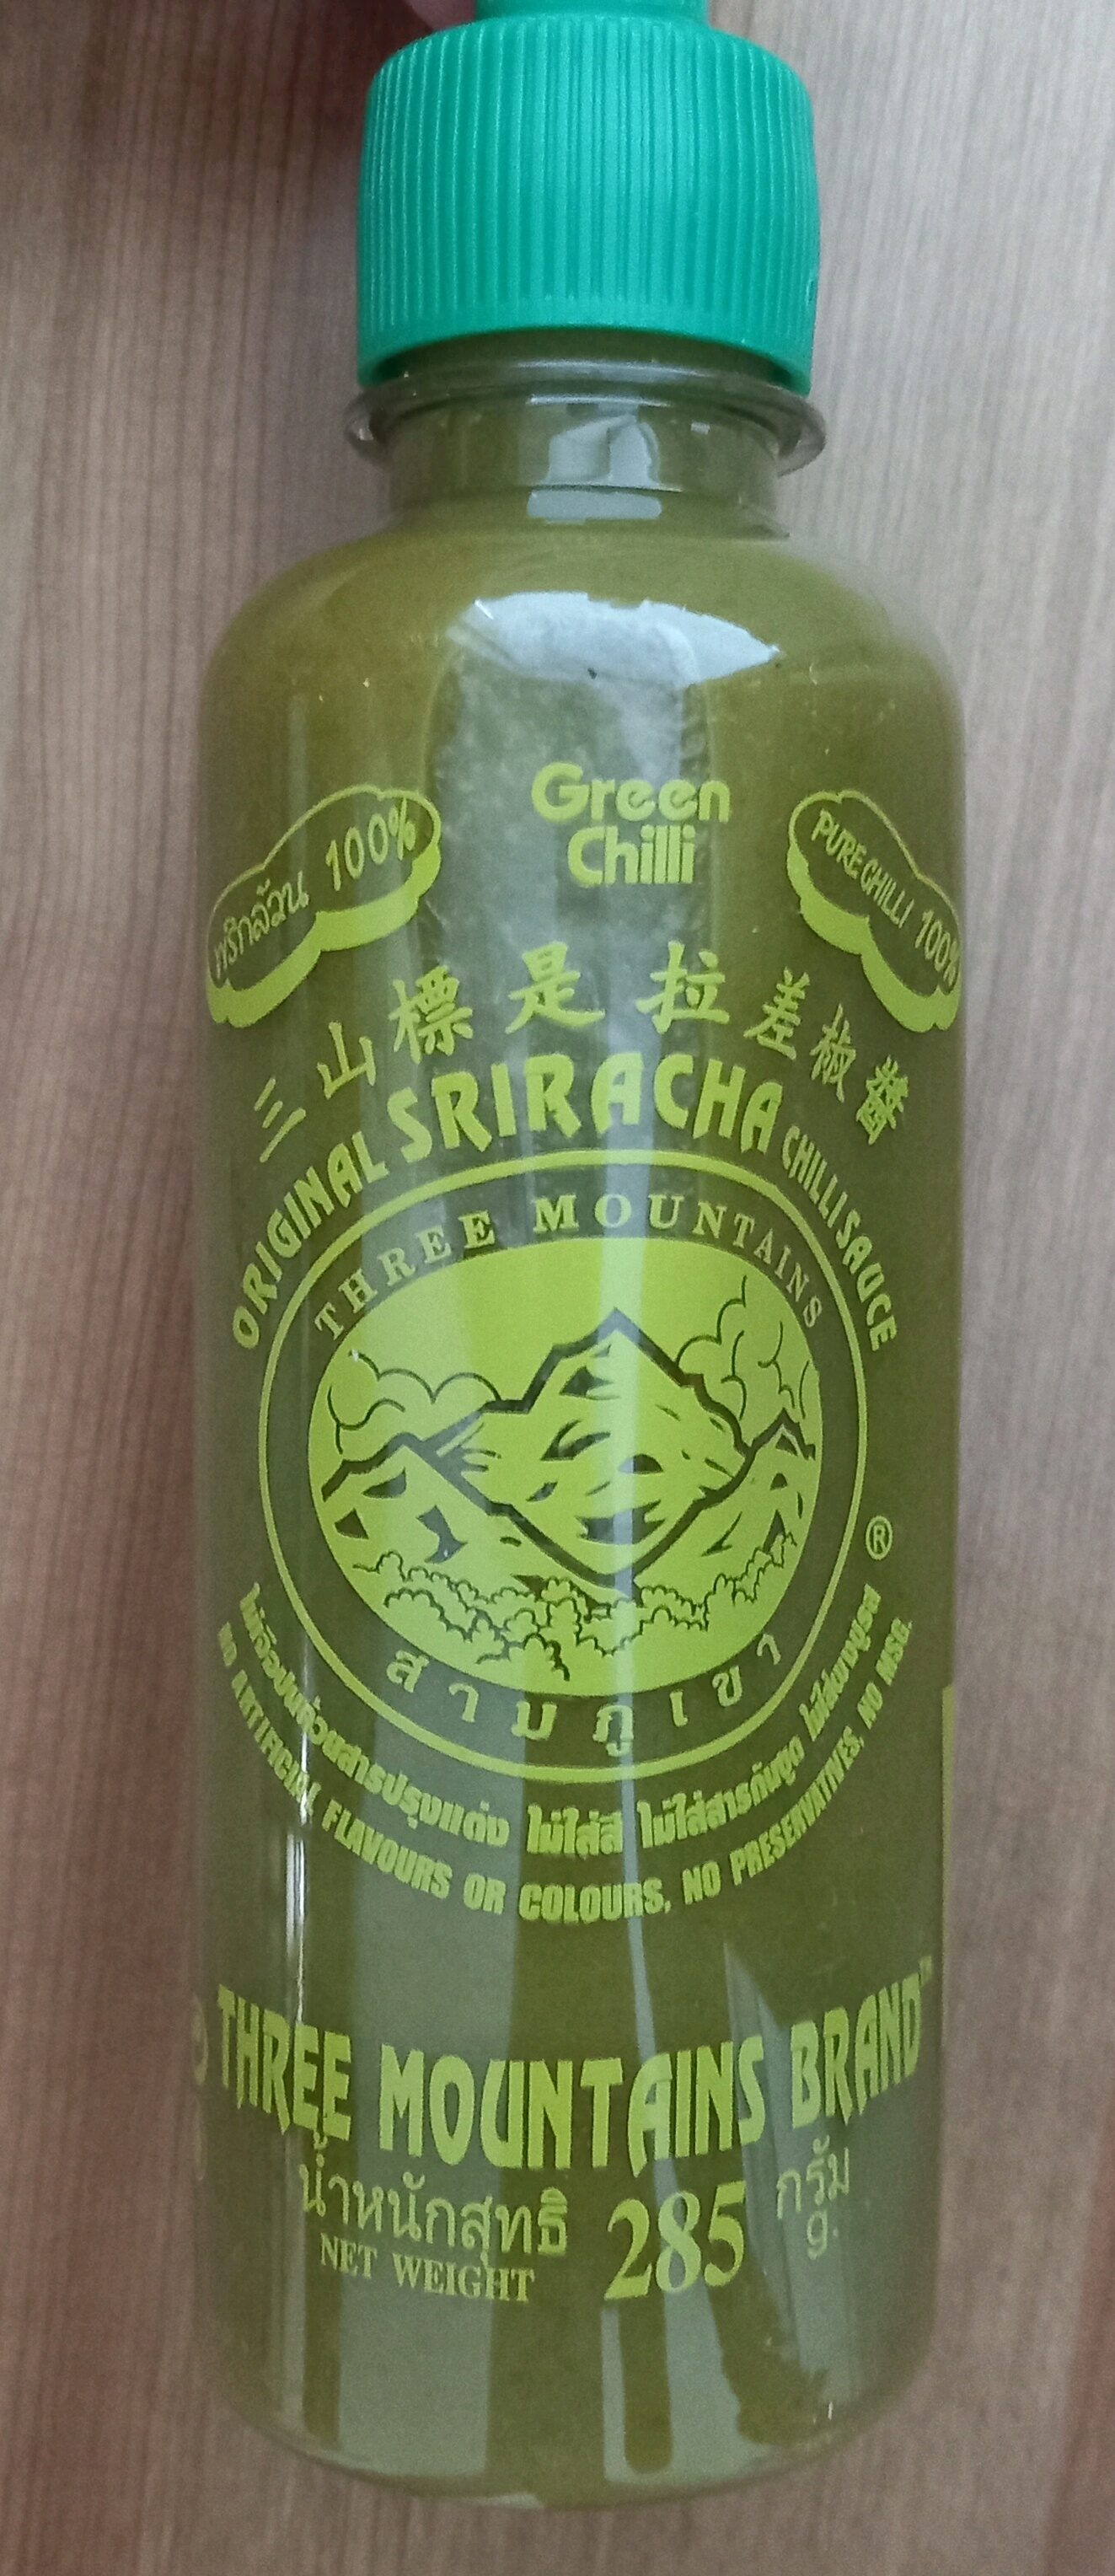 Original Sriracha Chili Sauce - Produkt